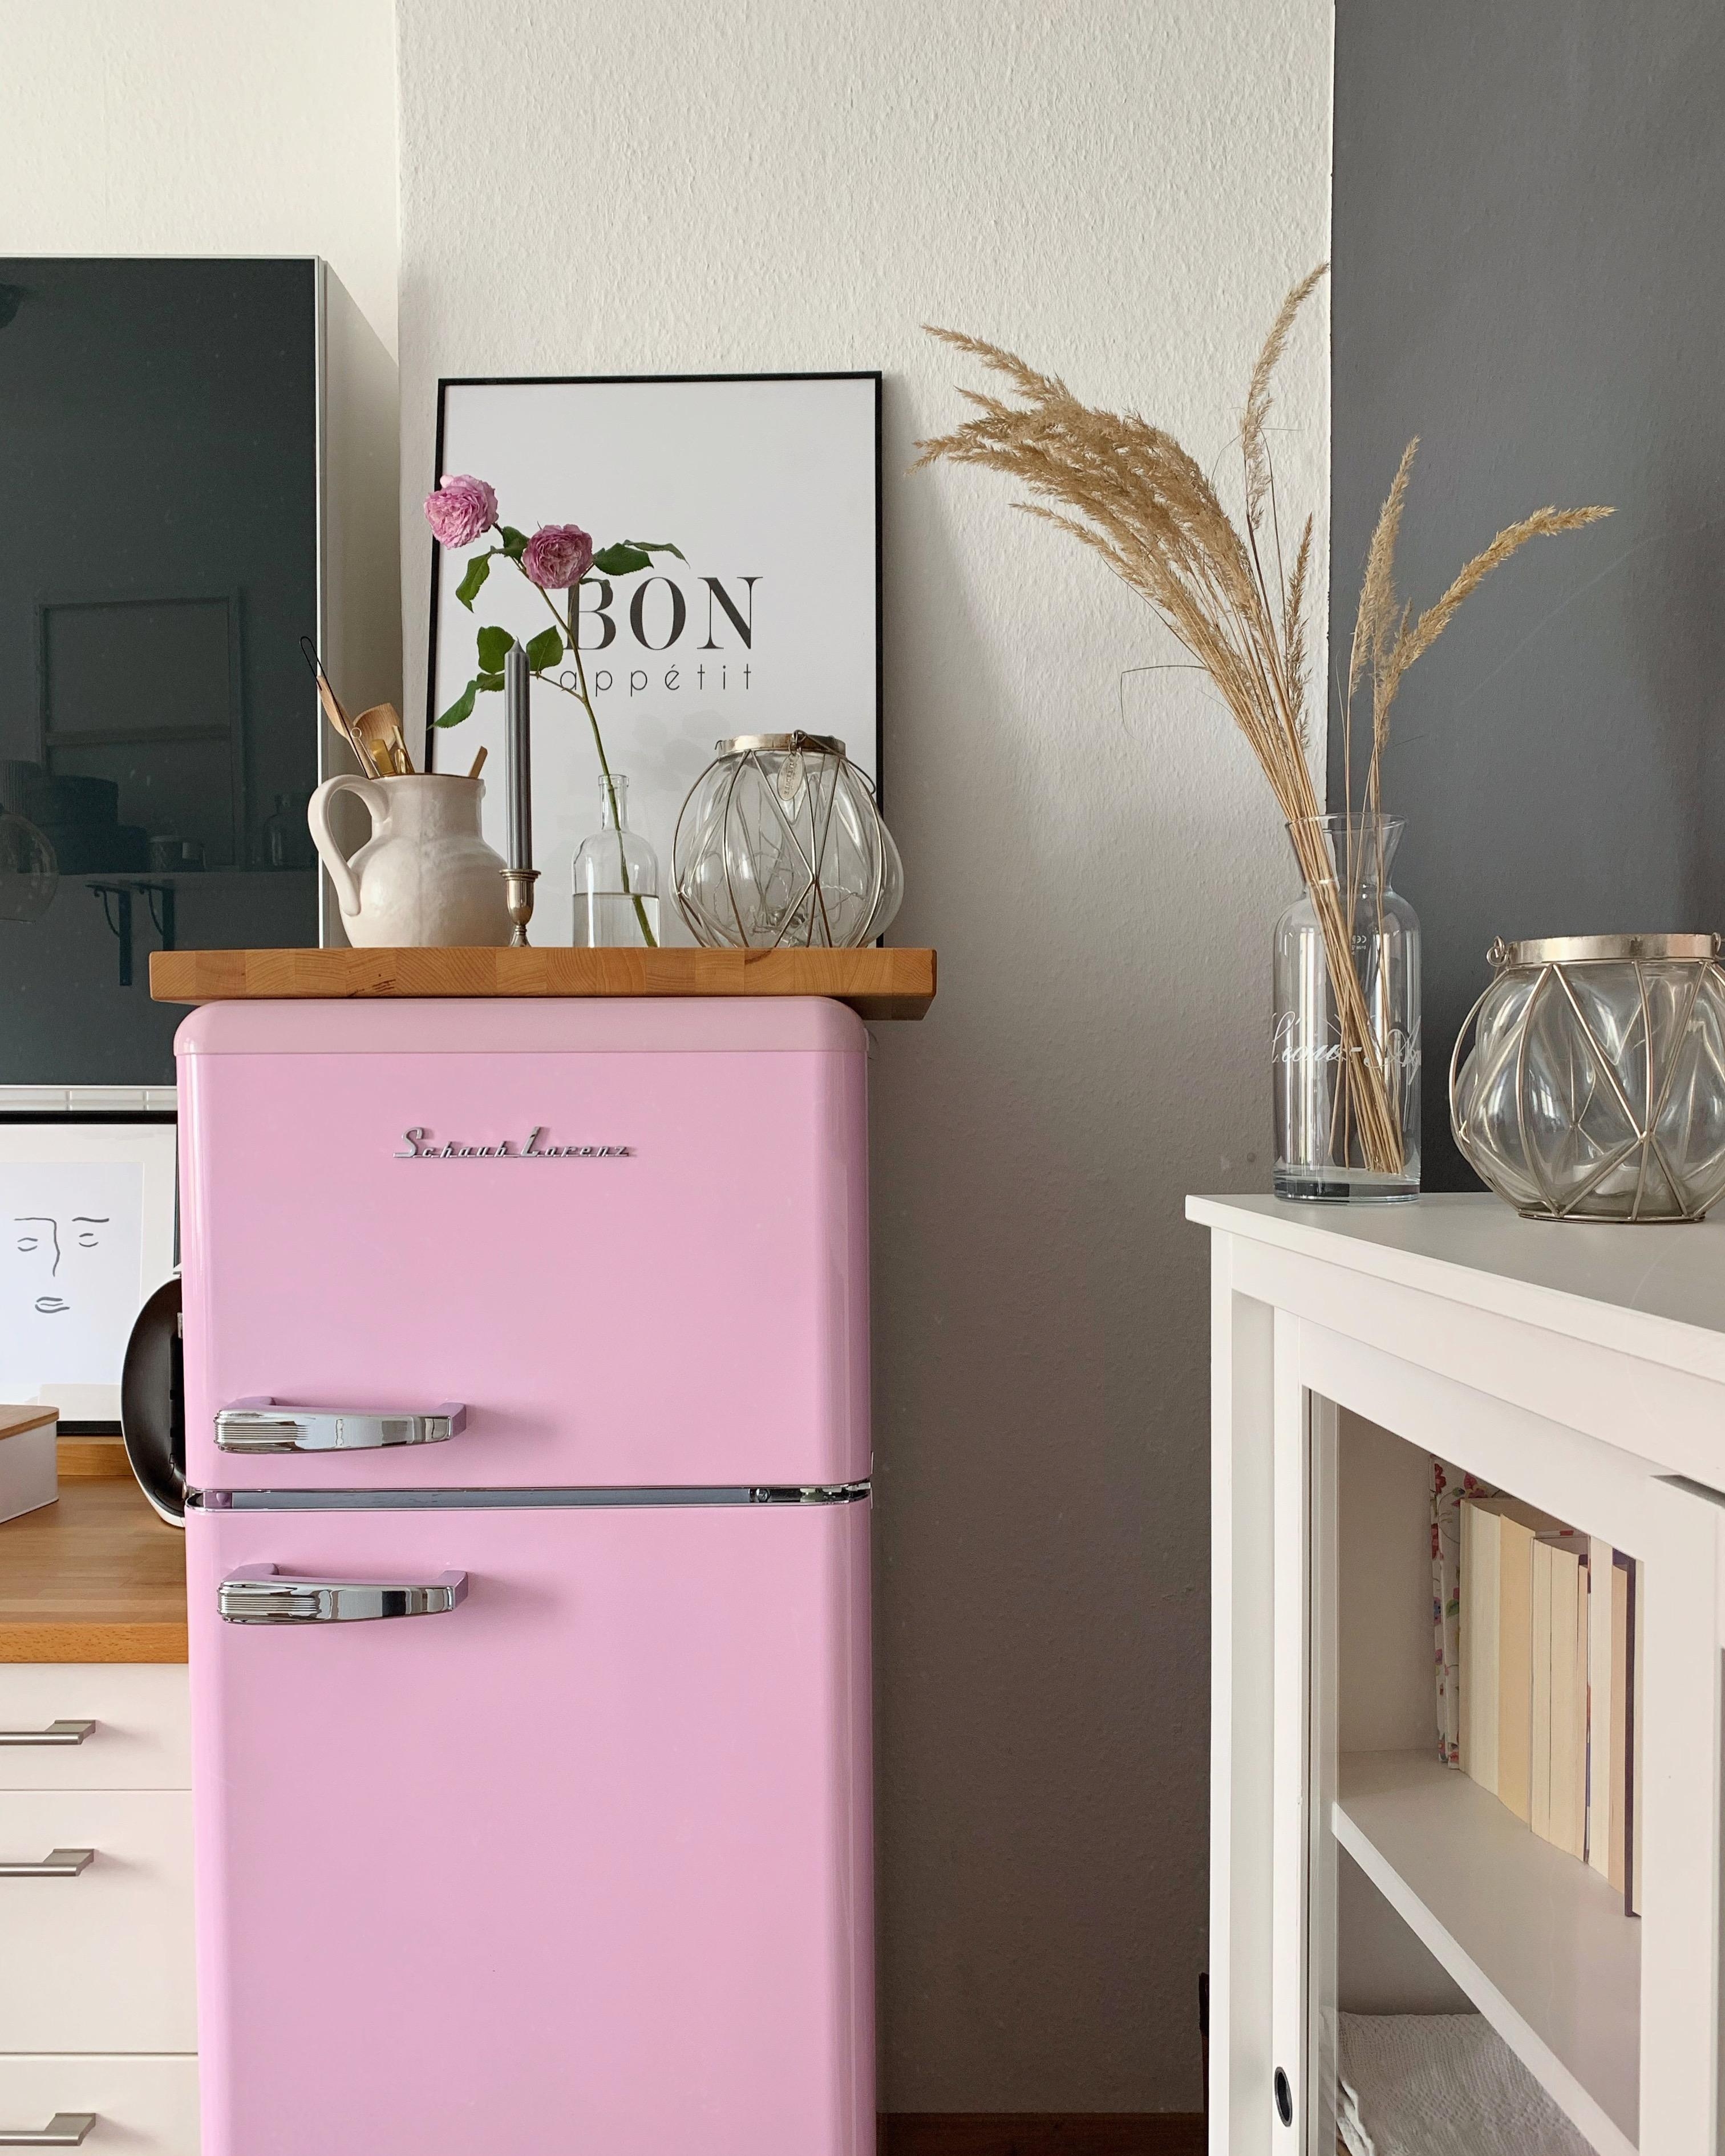 Mädels Kühlschrank 🌸💕
#pink #fridgegoals #kitcheninspo #dekoliebe #interiordecor #homeinspo #küchentraum #kitchencorner